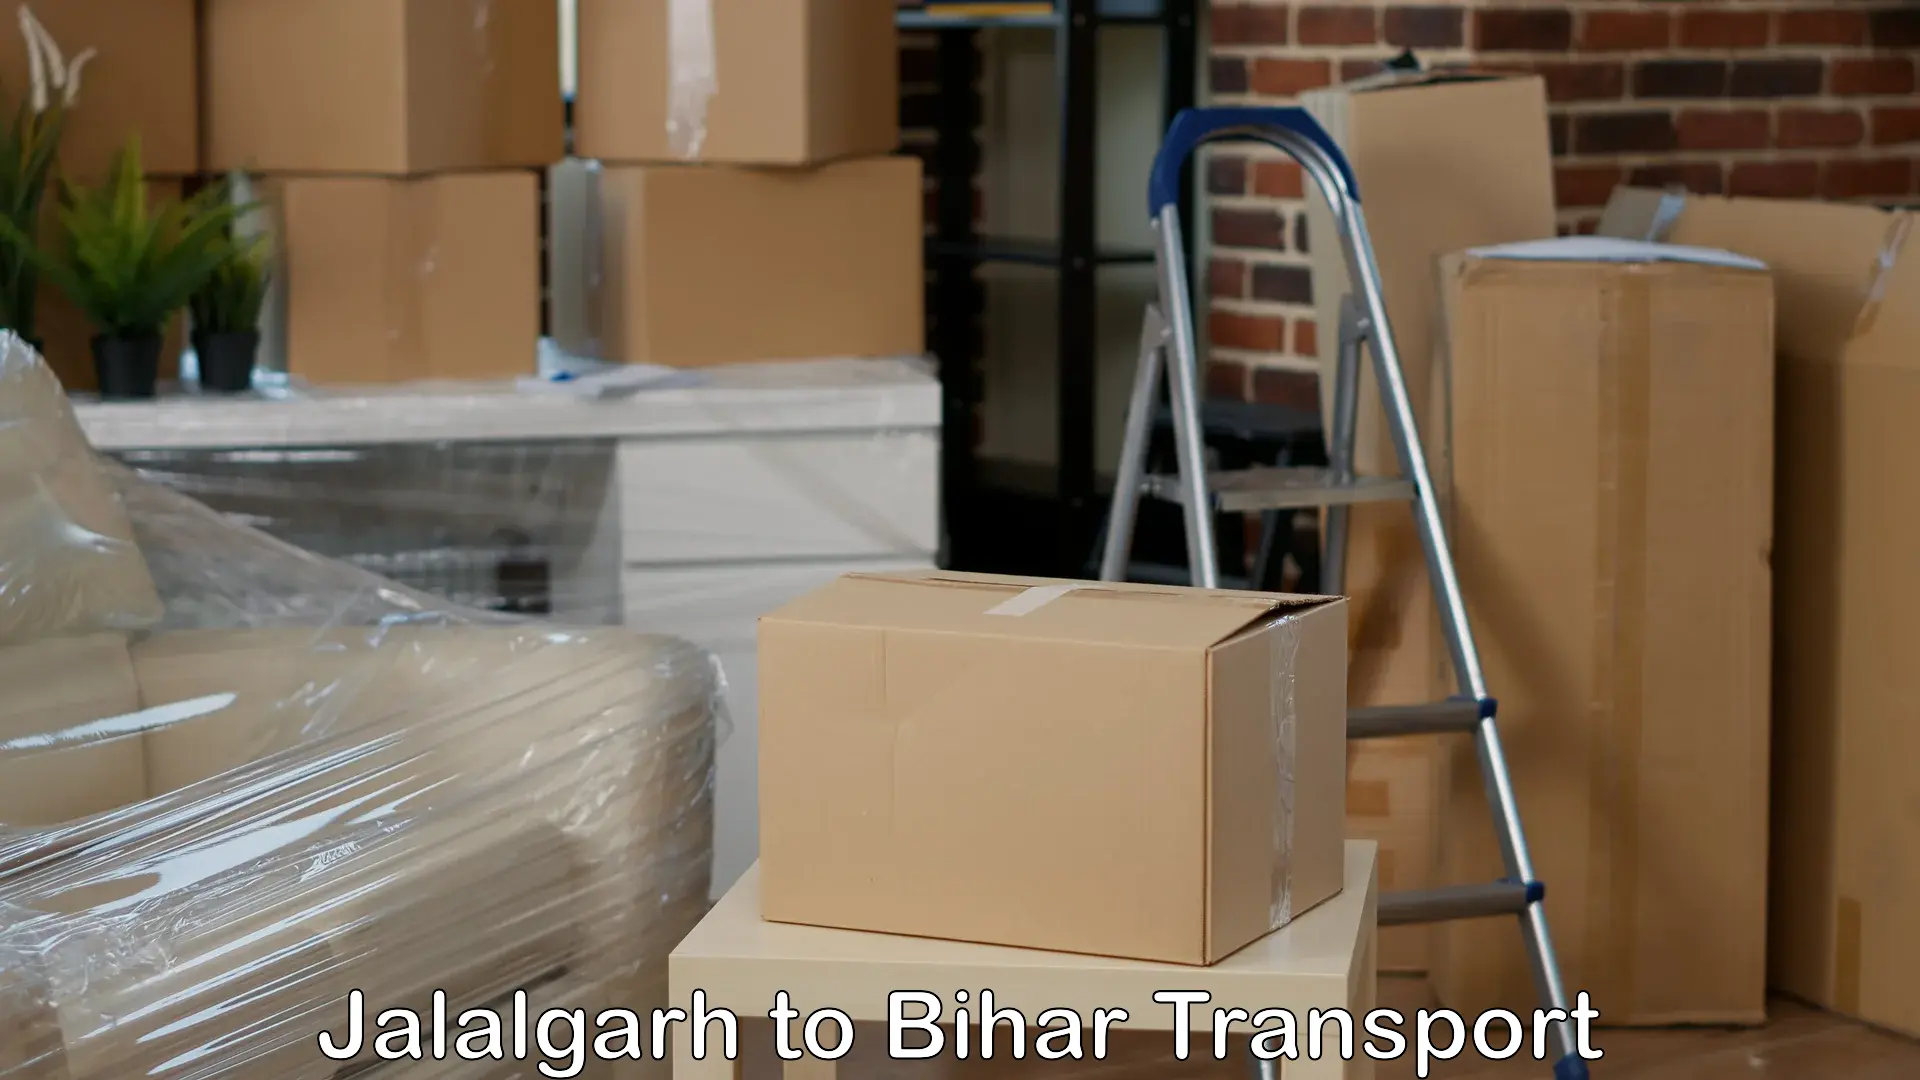 Shipping partner Jalalgarh to Bhojpur